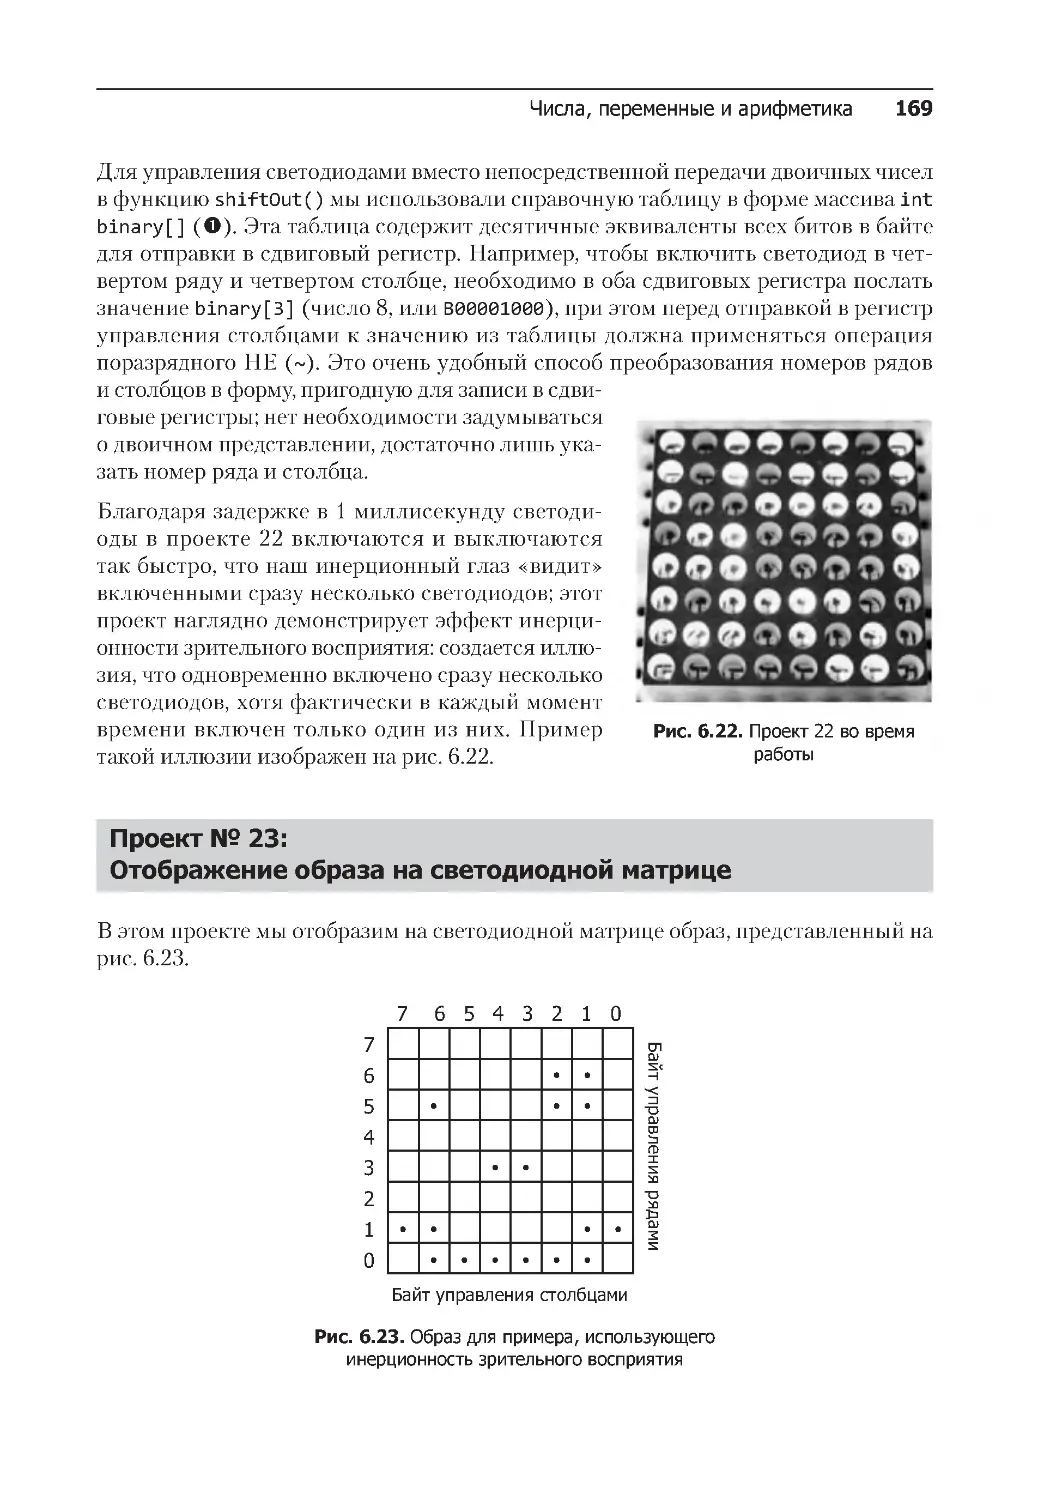 ﻿Проект № 23: 
Отображение образа на светодиодной матриц